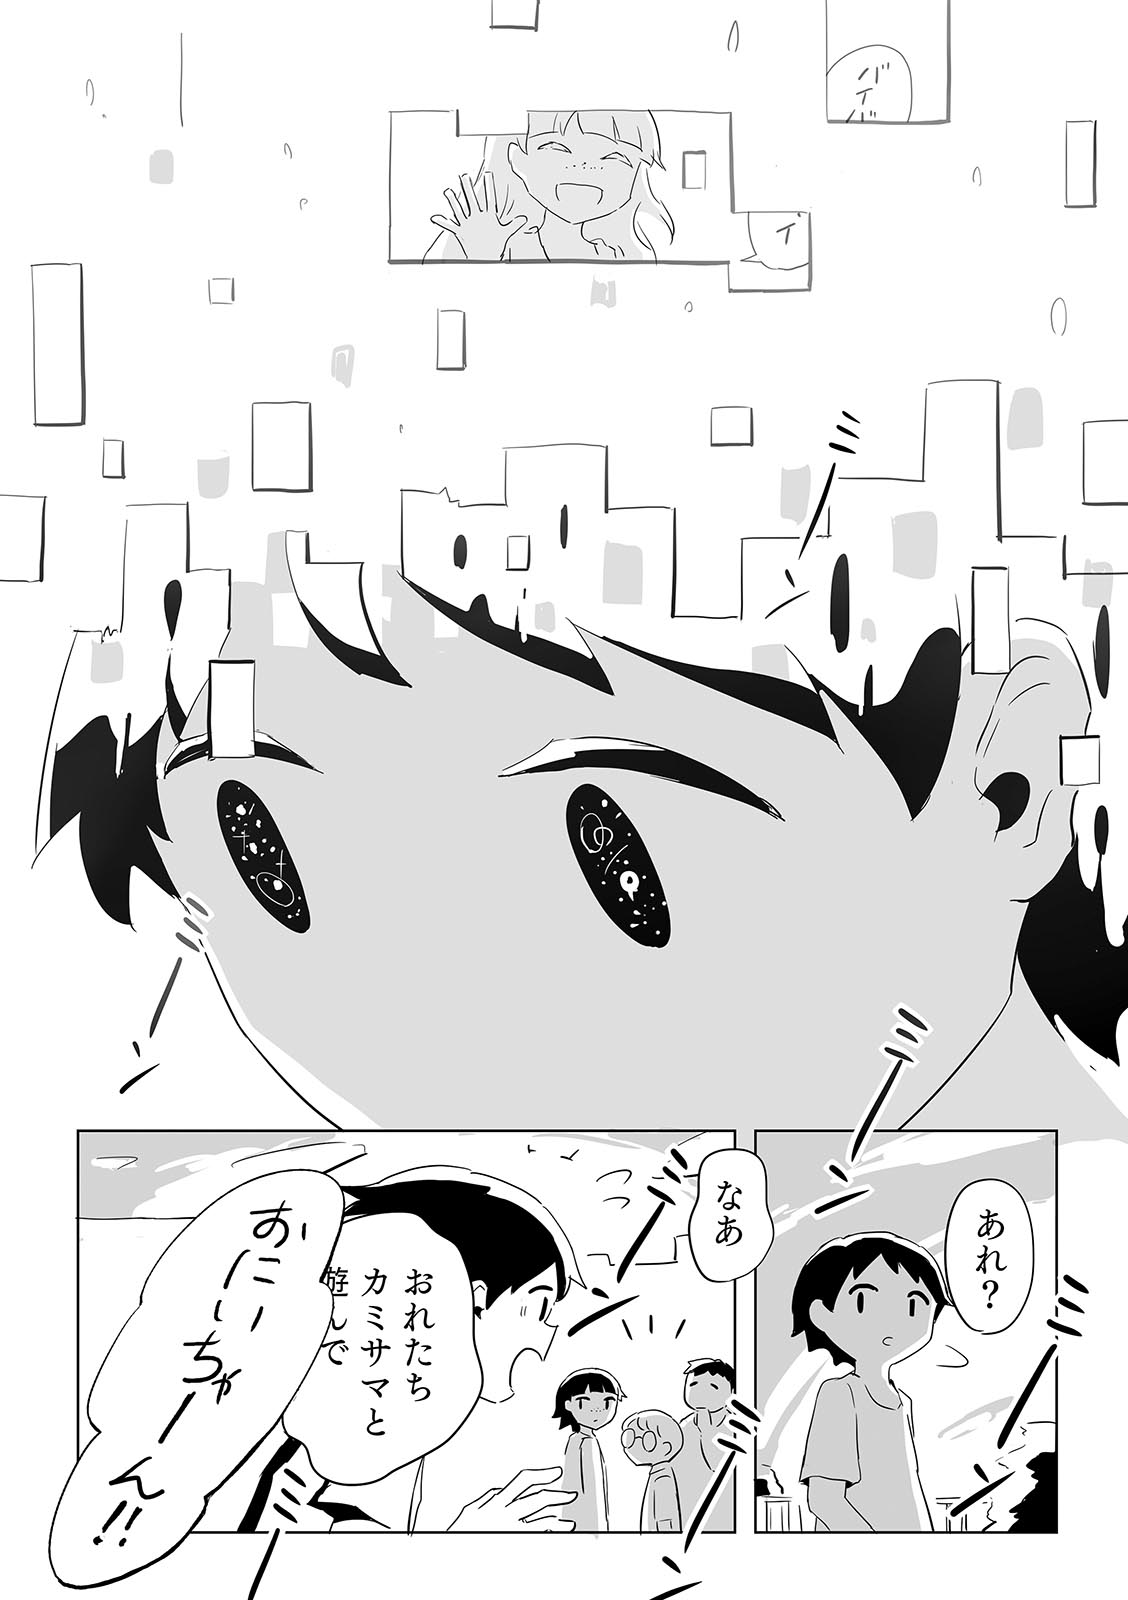 4年保証』 アボカド6 ポスター [ポロポロ] - 漫画 - hlt.no